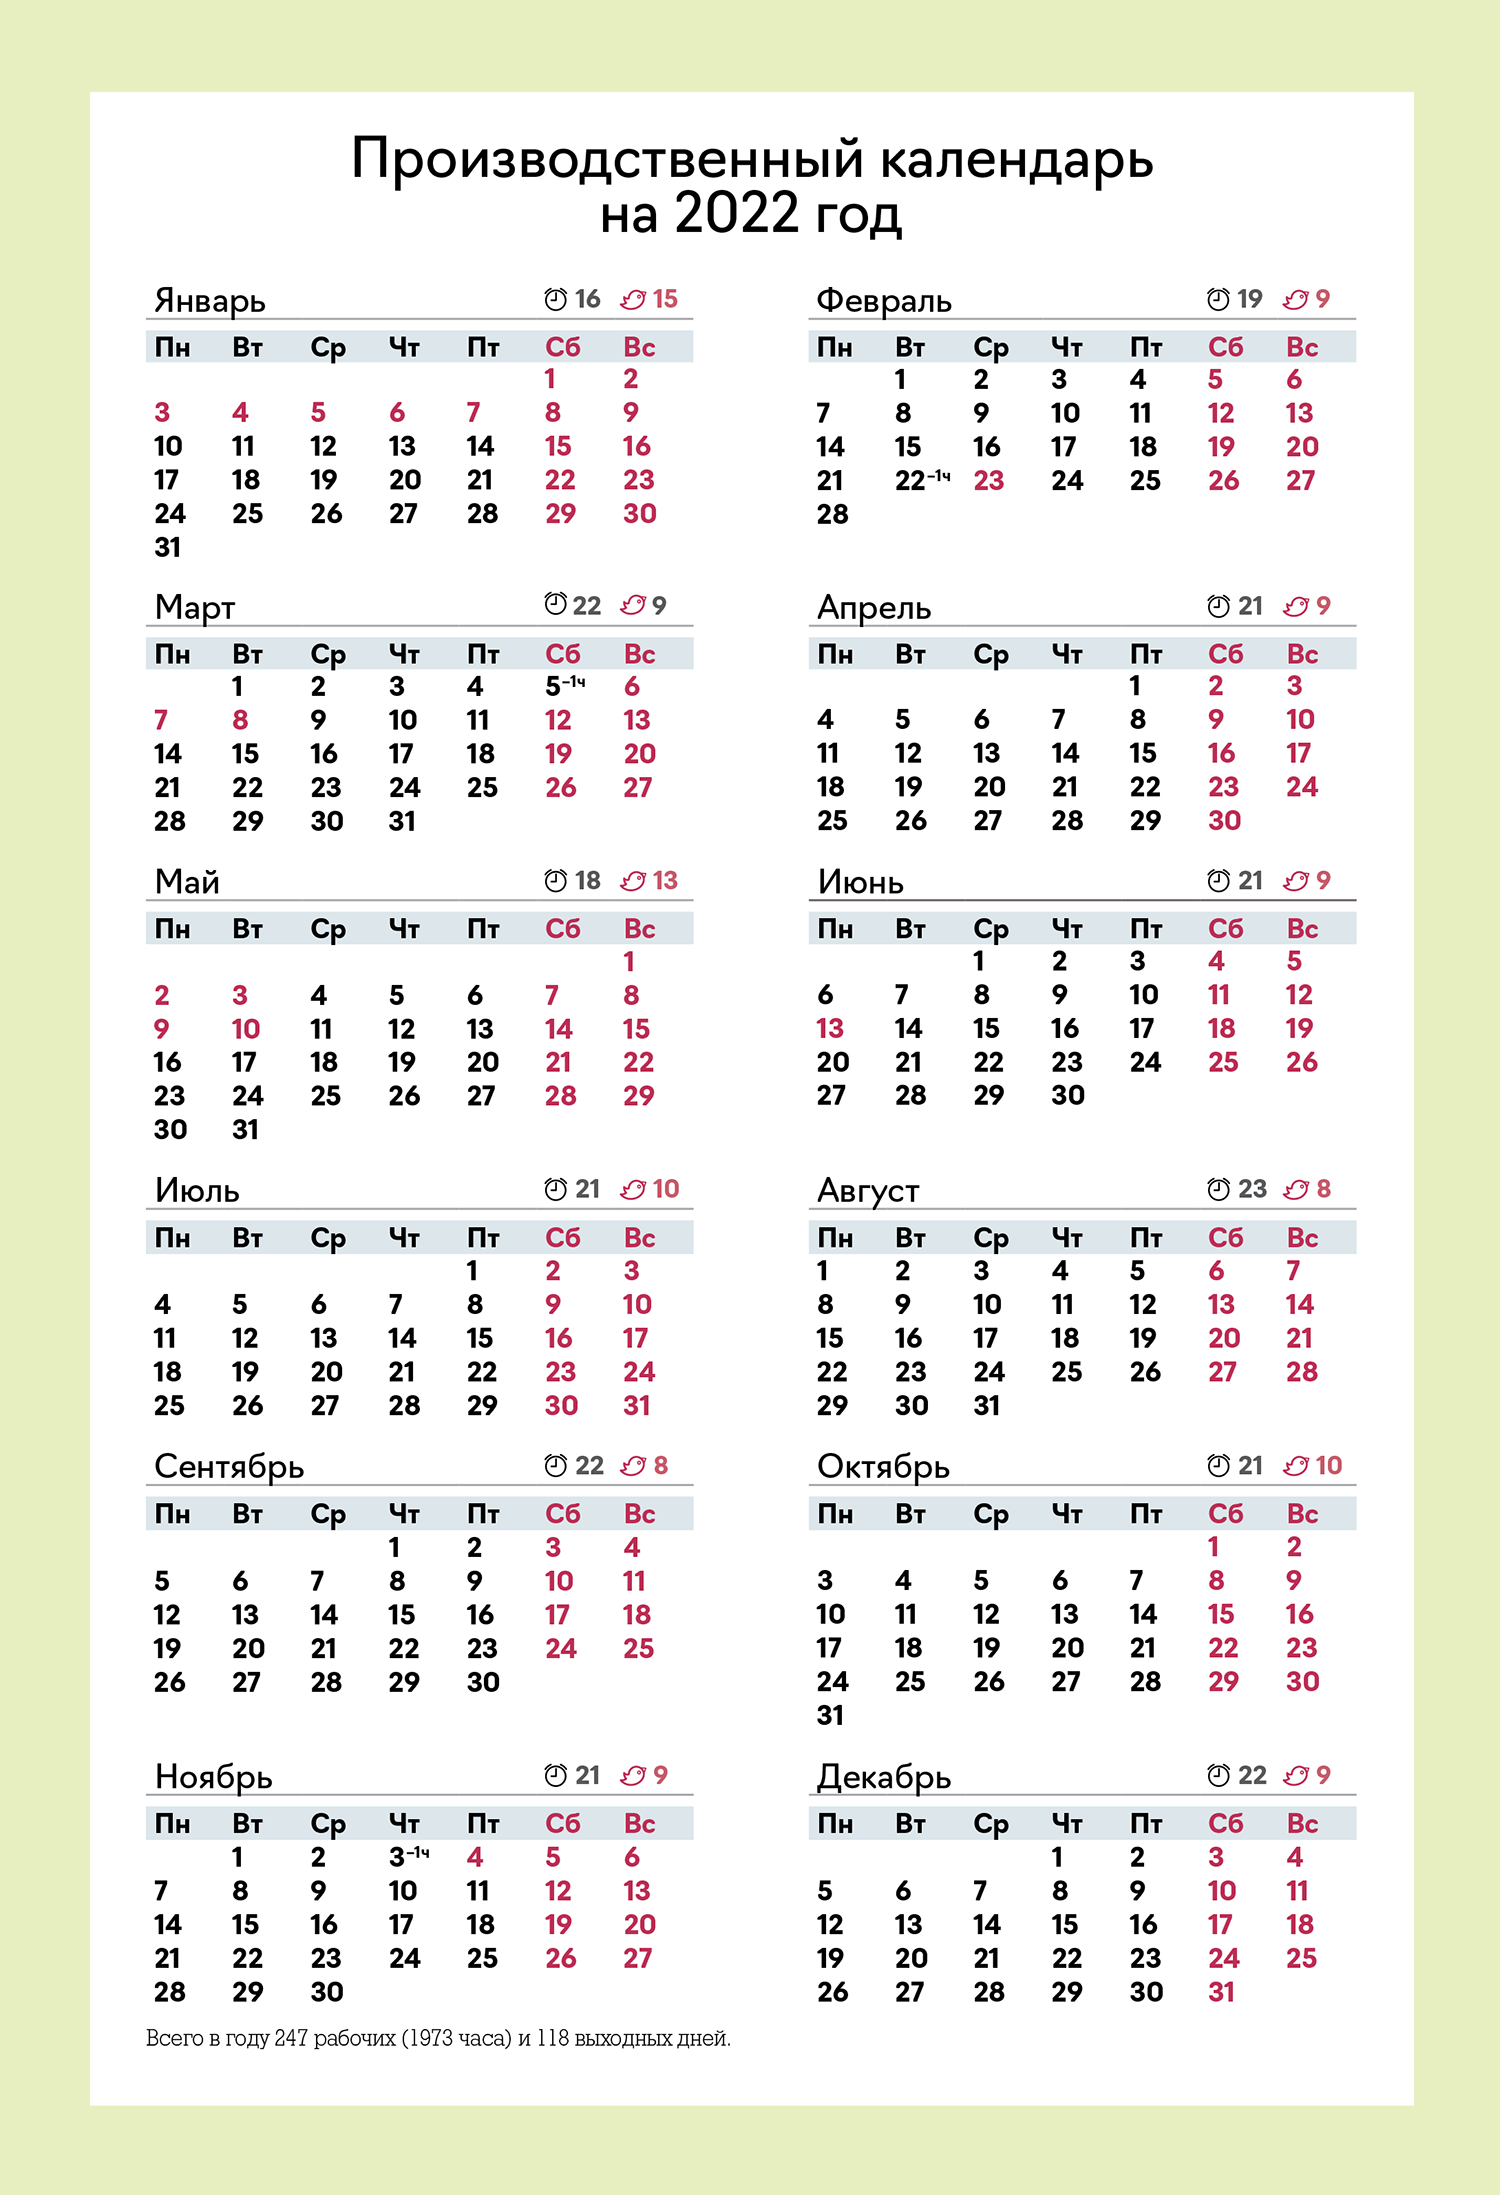 Производственный календарь январь часы. Бухгалтерский календарь на 2022 год. Календарь бухгалтера. Производственный календарь на 2022 год. Календарь бухгалтера на 2022.